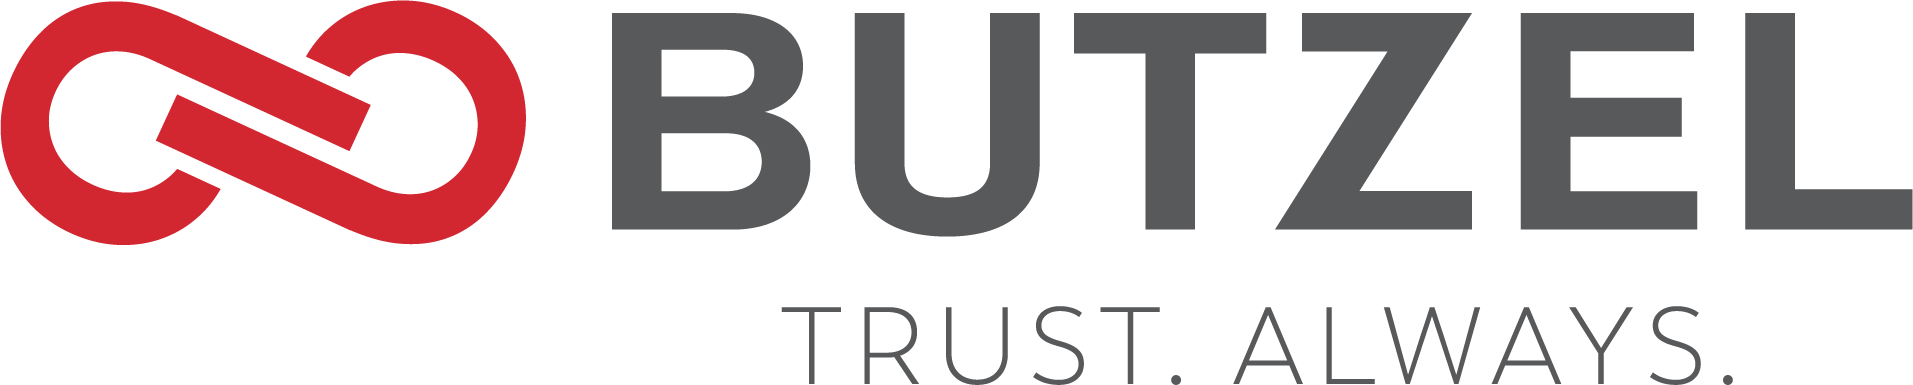 Butzel Stacked Logo